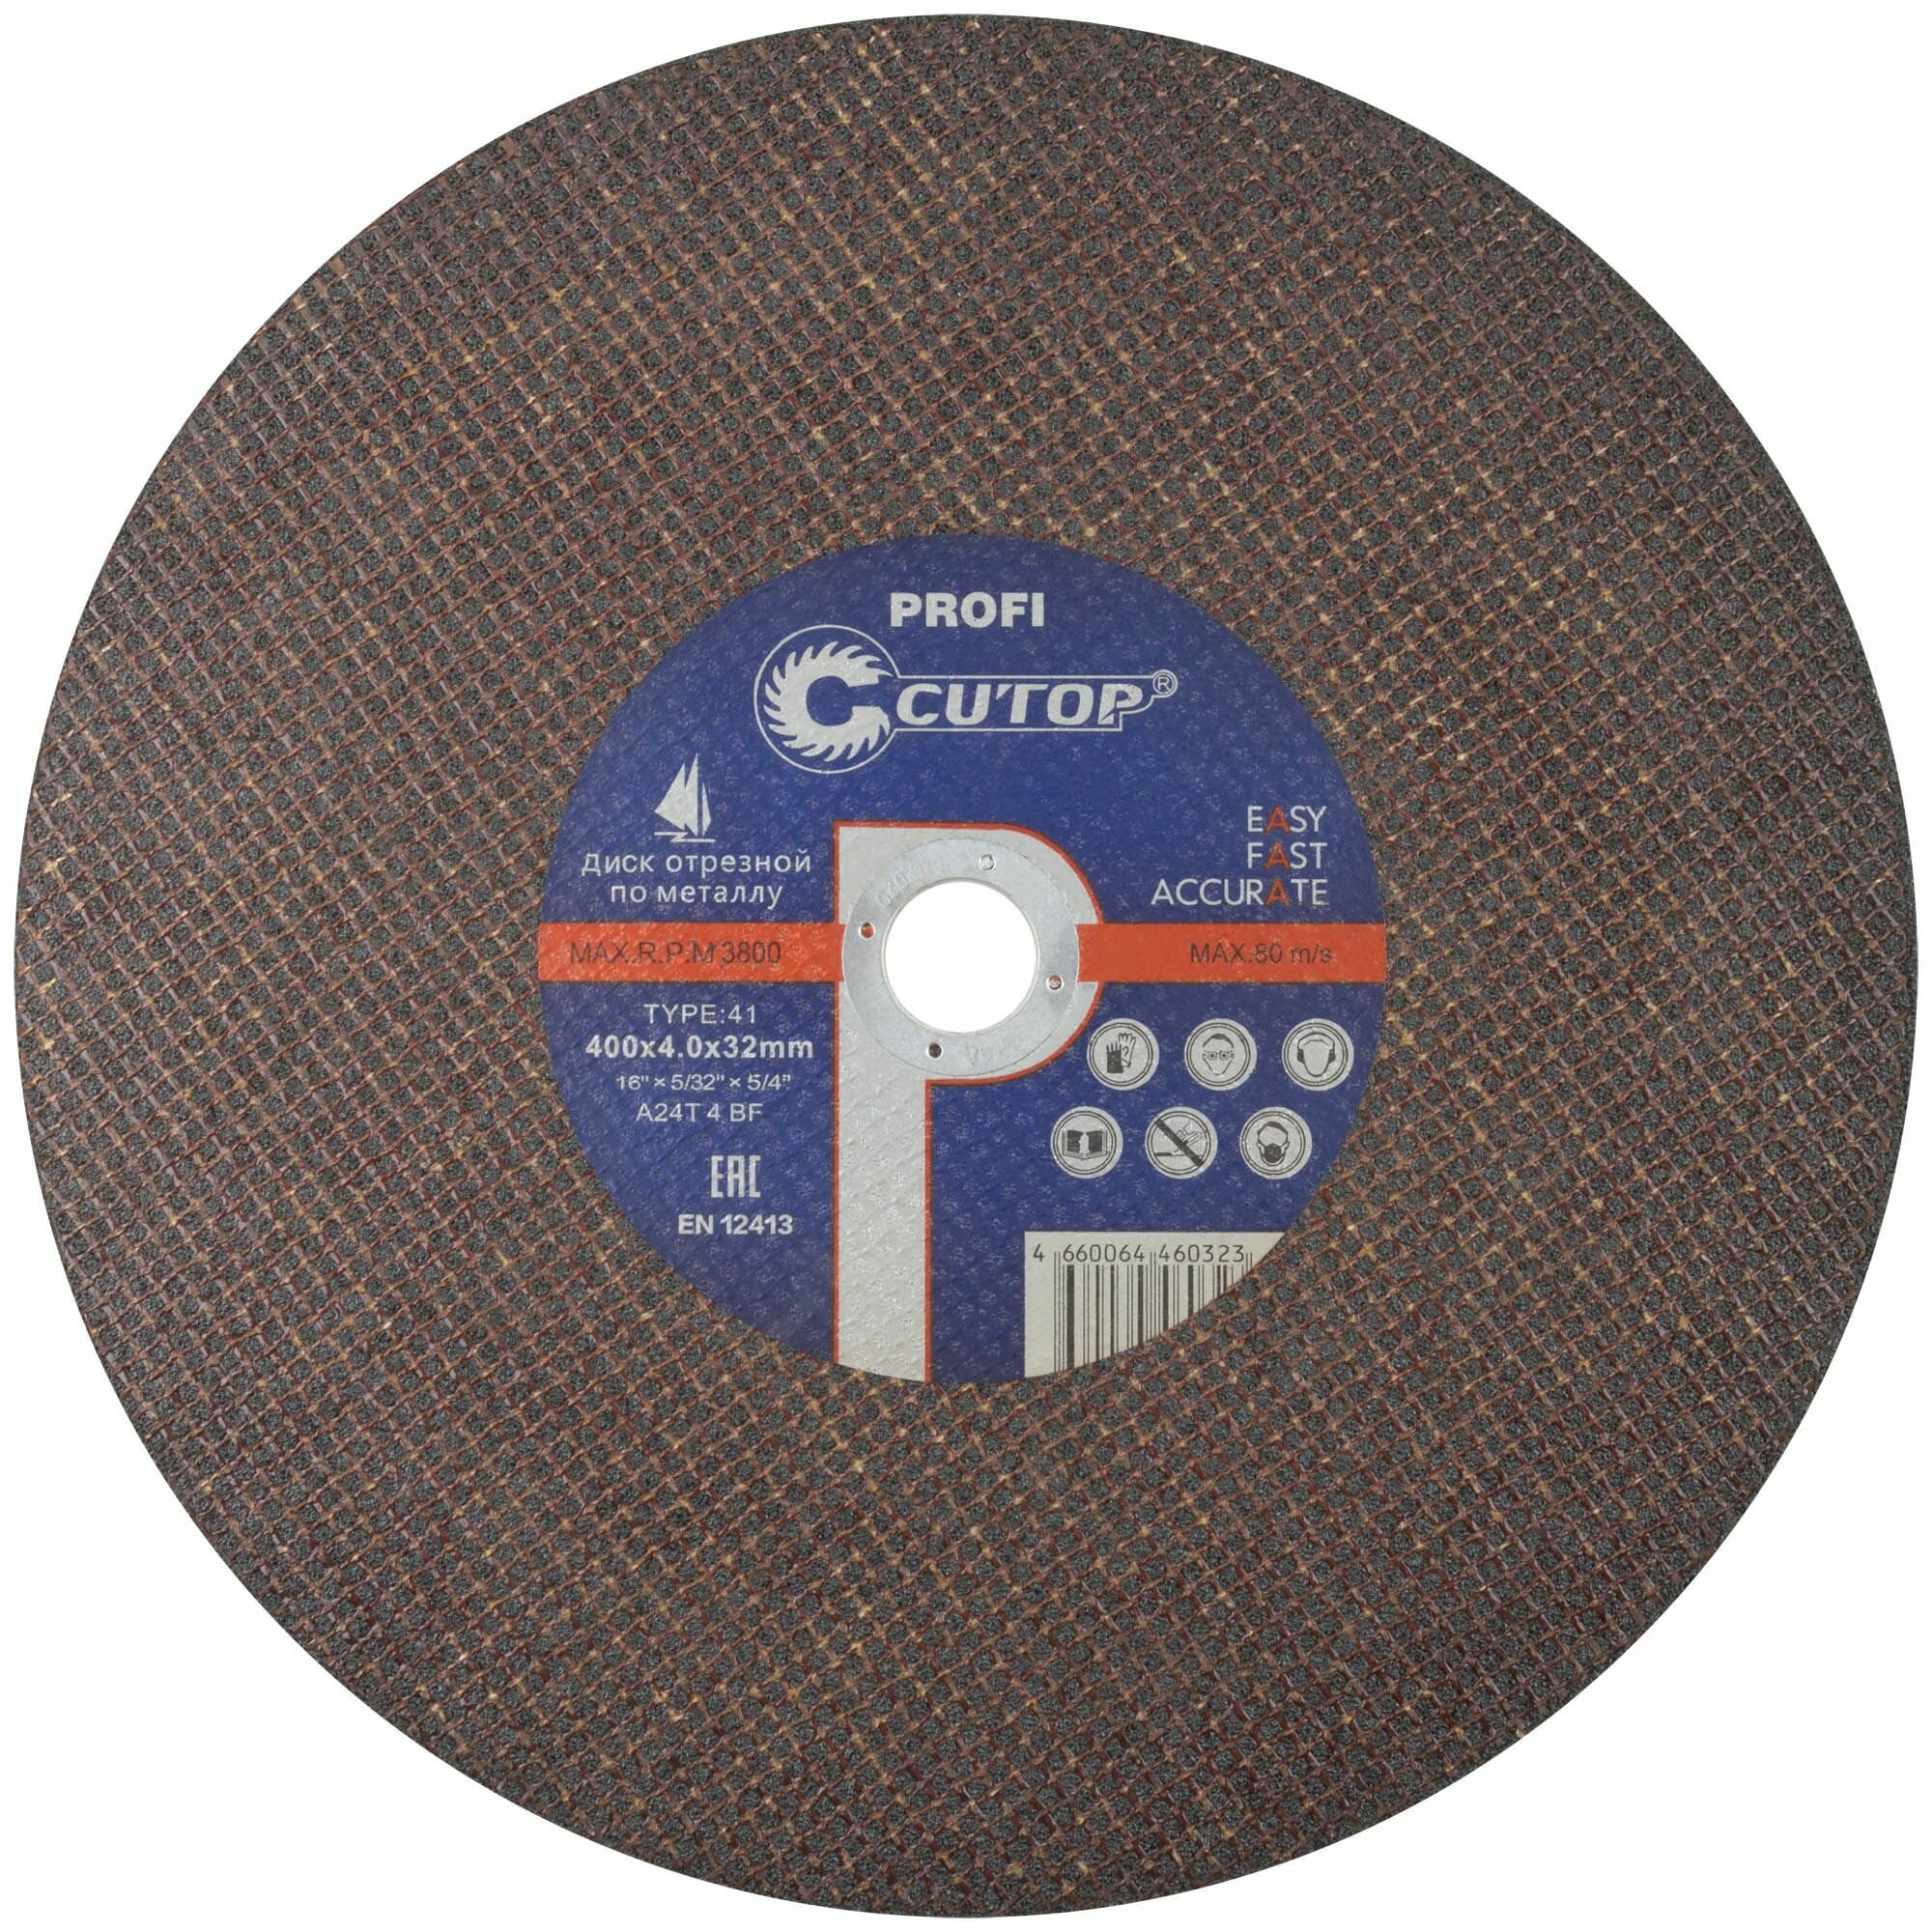 Профессиональный диск отрезной по металлу Т41-400 х 4,0 х 32 мм, Cutop Profi 5 штук